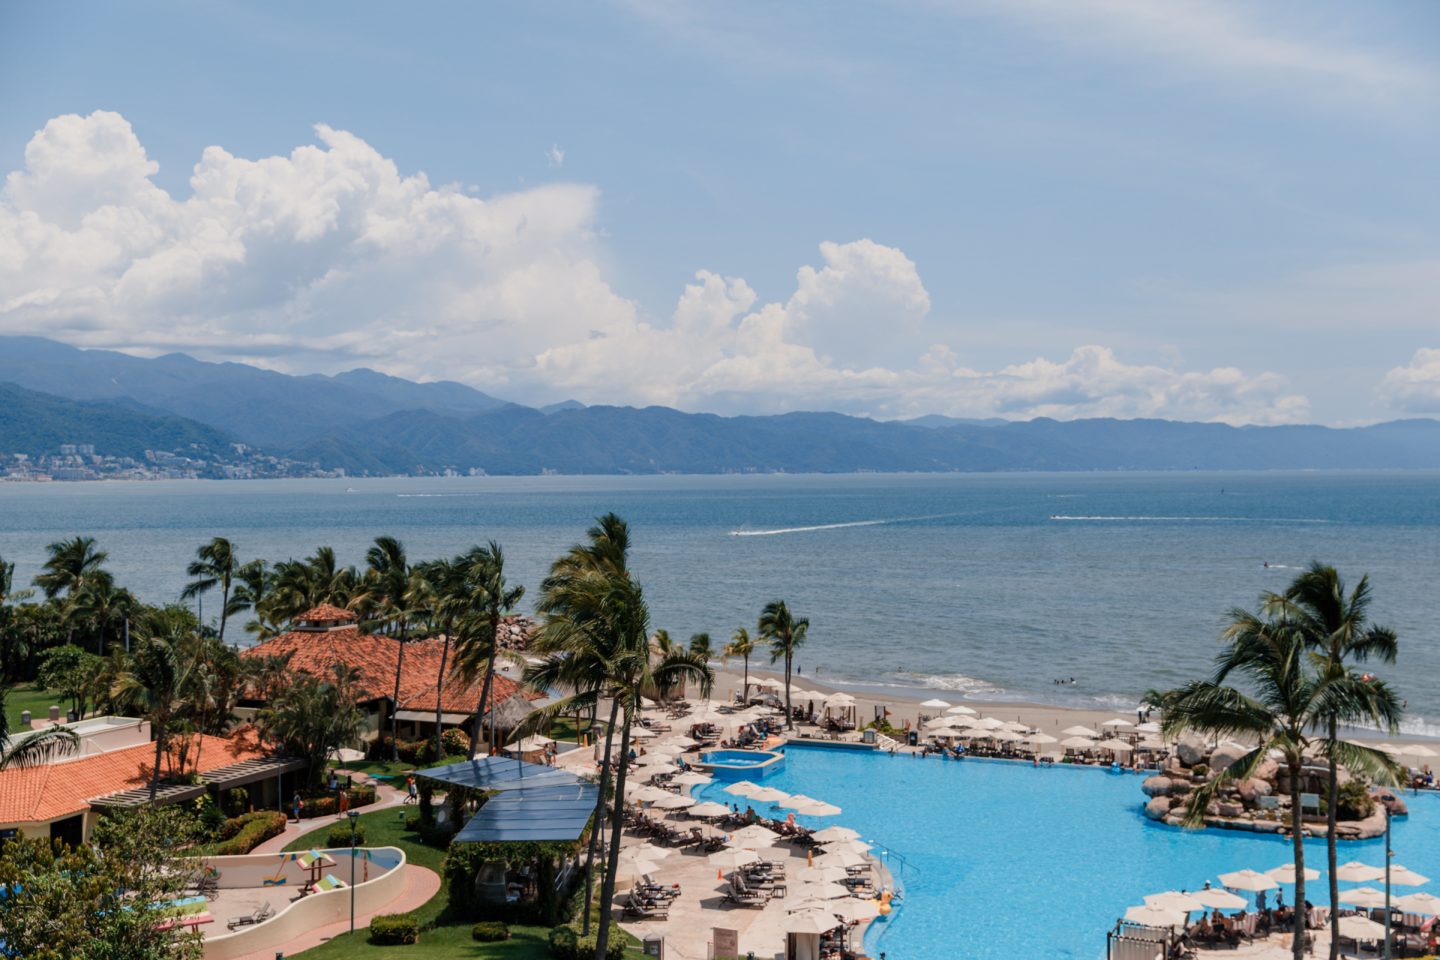 Where to Stay In Puerto Vallarta Mexico | Marriott Puerto Vallarta Hotel review - Dana Berez Travel Guide